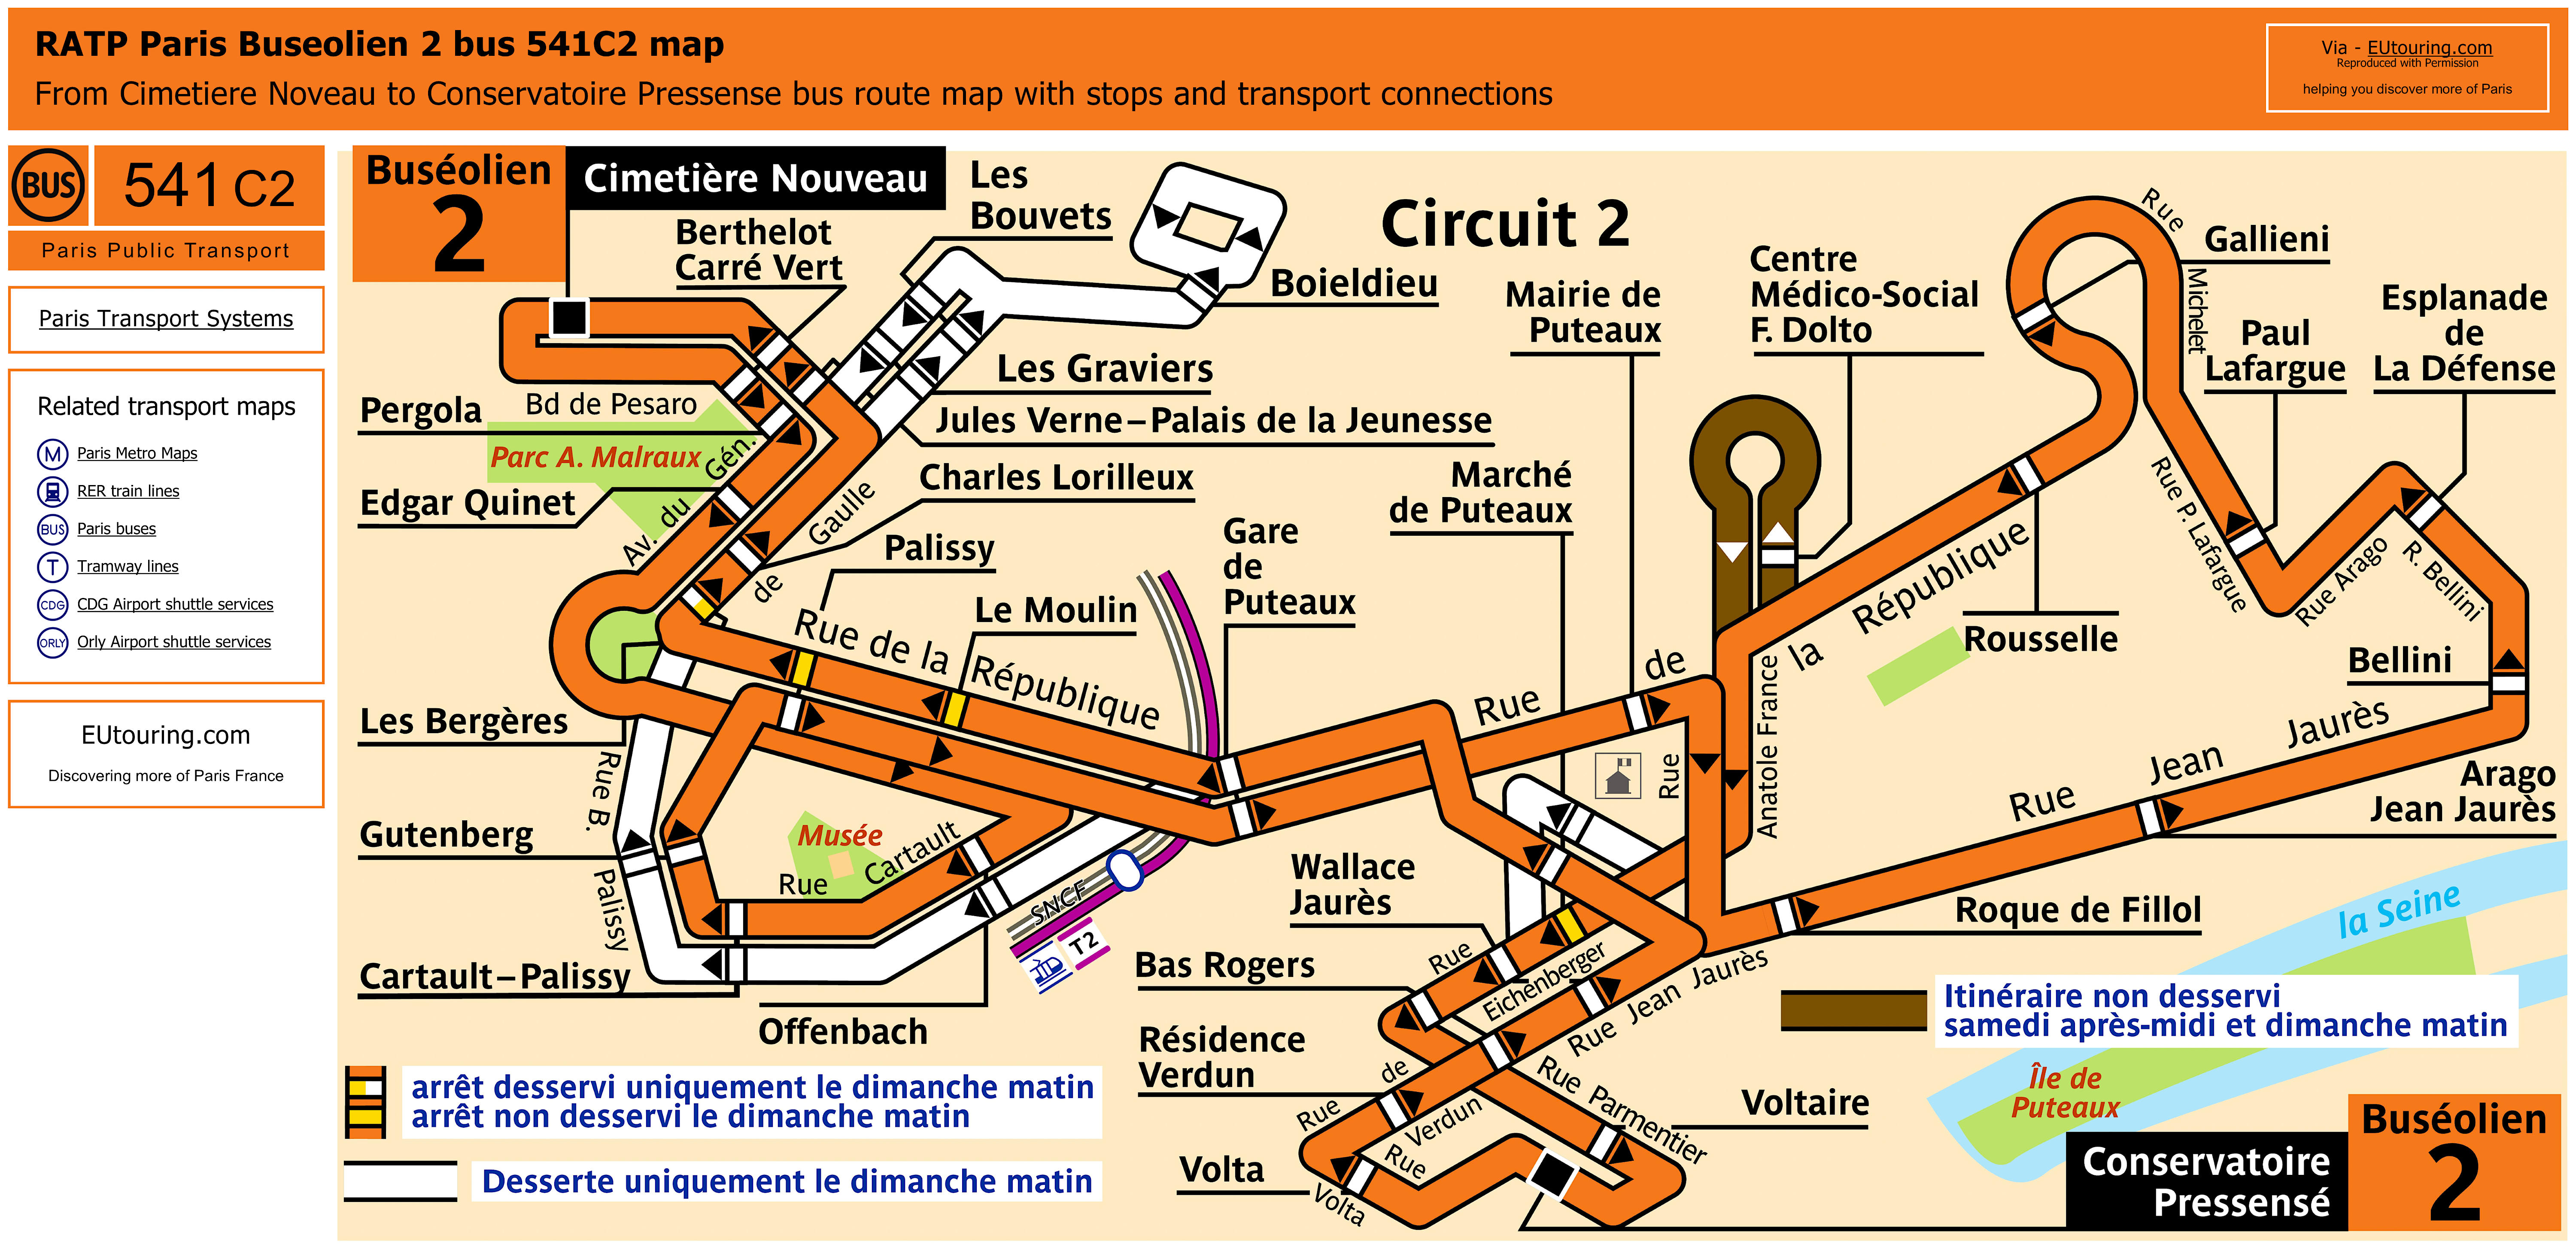 Paris bus 541C2 route maps available.